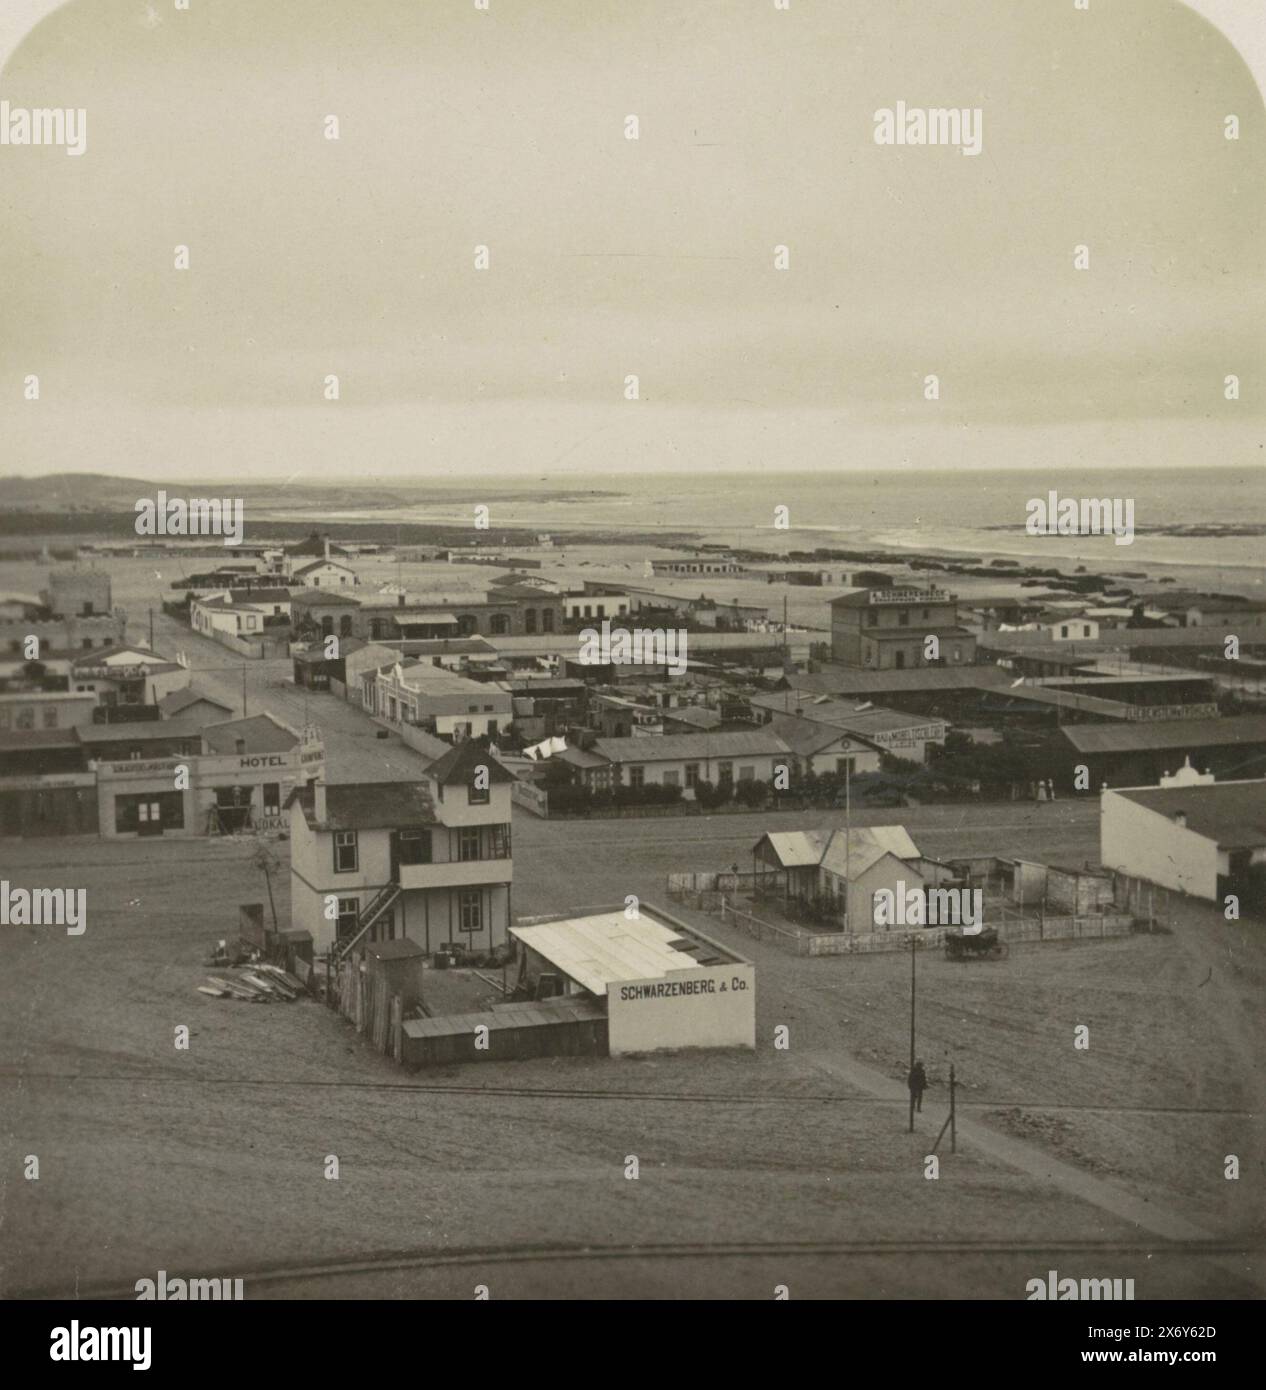 Vista di Swakopmund, Africa sudoccidentale. In basso a destra della foto c'è scritto: R.2724., stereografo, anonimo, sconosciuto, c. 1884 - c. 1914, carta, altezza, 90 mm x larghezza, 181 mm Foto Stock